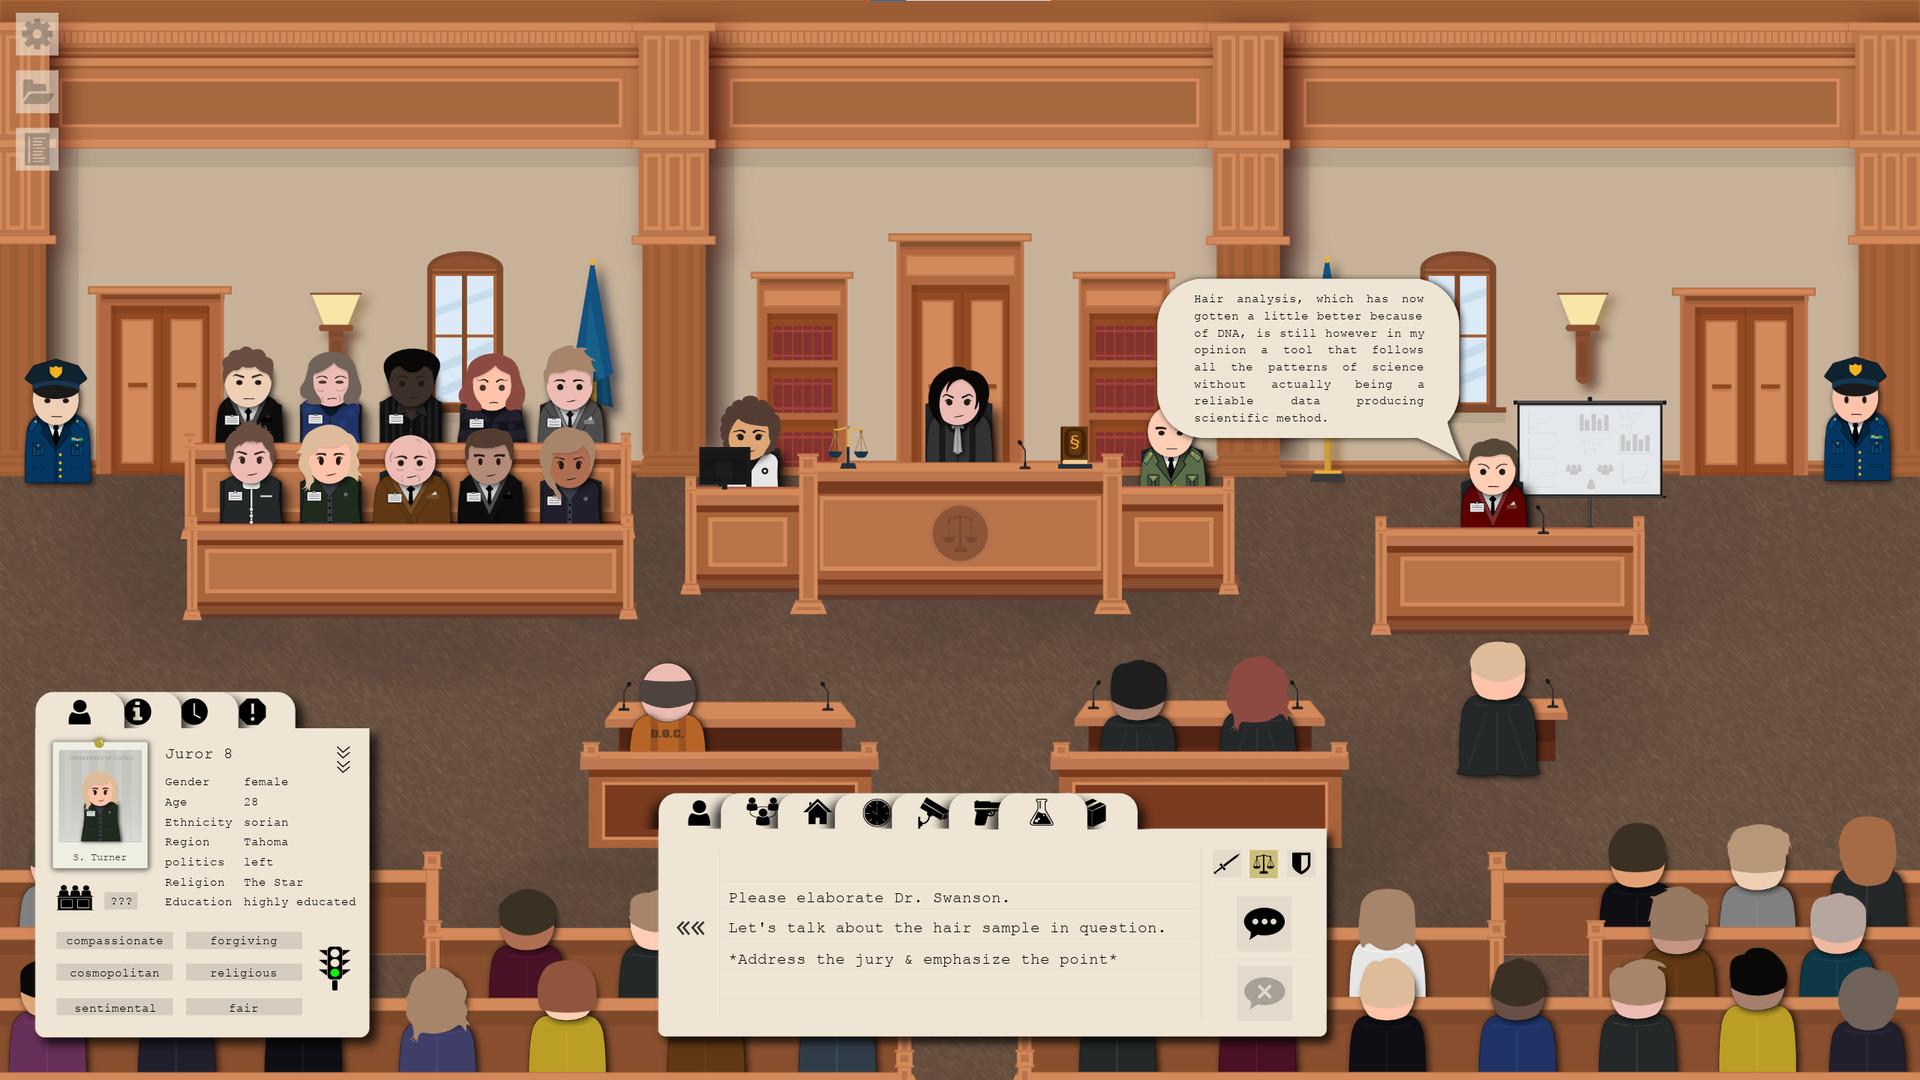 律师模拟RPG游戏《Jury Trial》上架Steam 2021年内发售截图